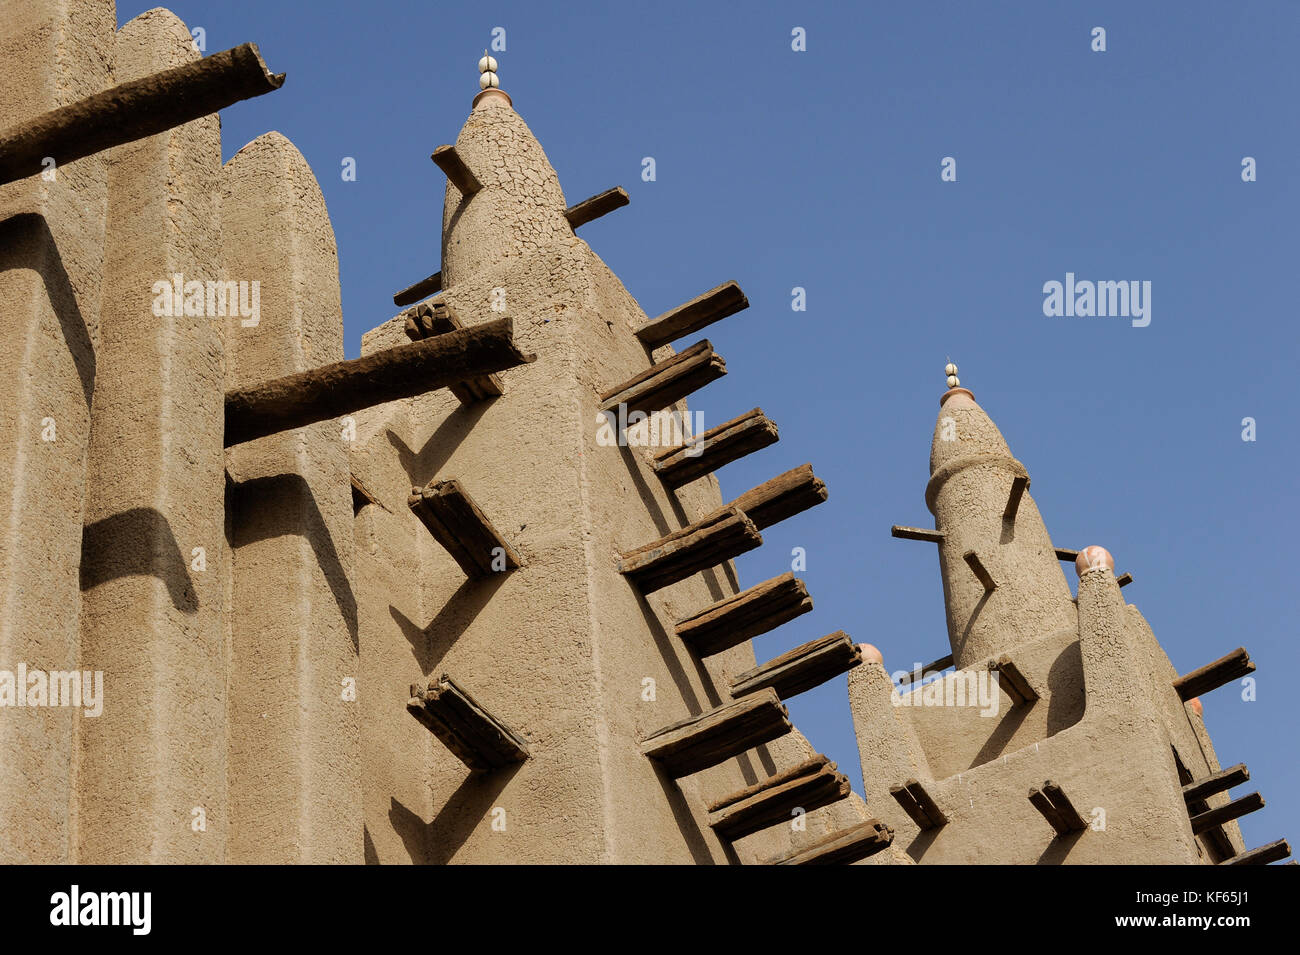 MALI Mopti, der Großen Moschee, ein Irdenes Struktur in der traditionellen Sudanesischen Stil zwischen 1936 und 1943 erbaut, ist häufig die Moschee von Komoguel genannt. rebuild von Aga Khan Foundation, UNESCO Welterbe/Grosse Moschee aus Lehm ist UNESCO Weltkulturerbe Stockfoto